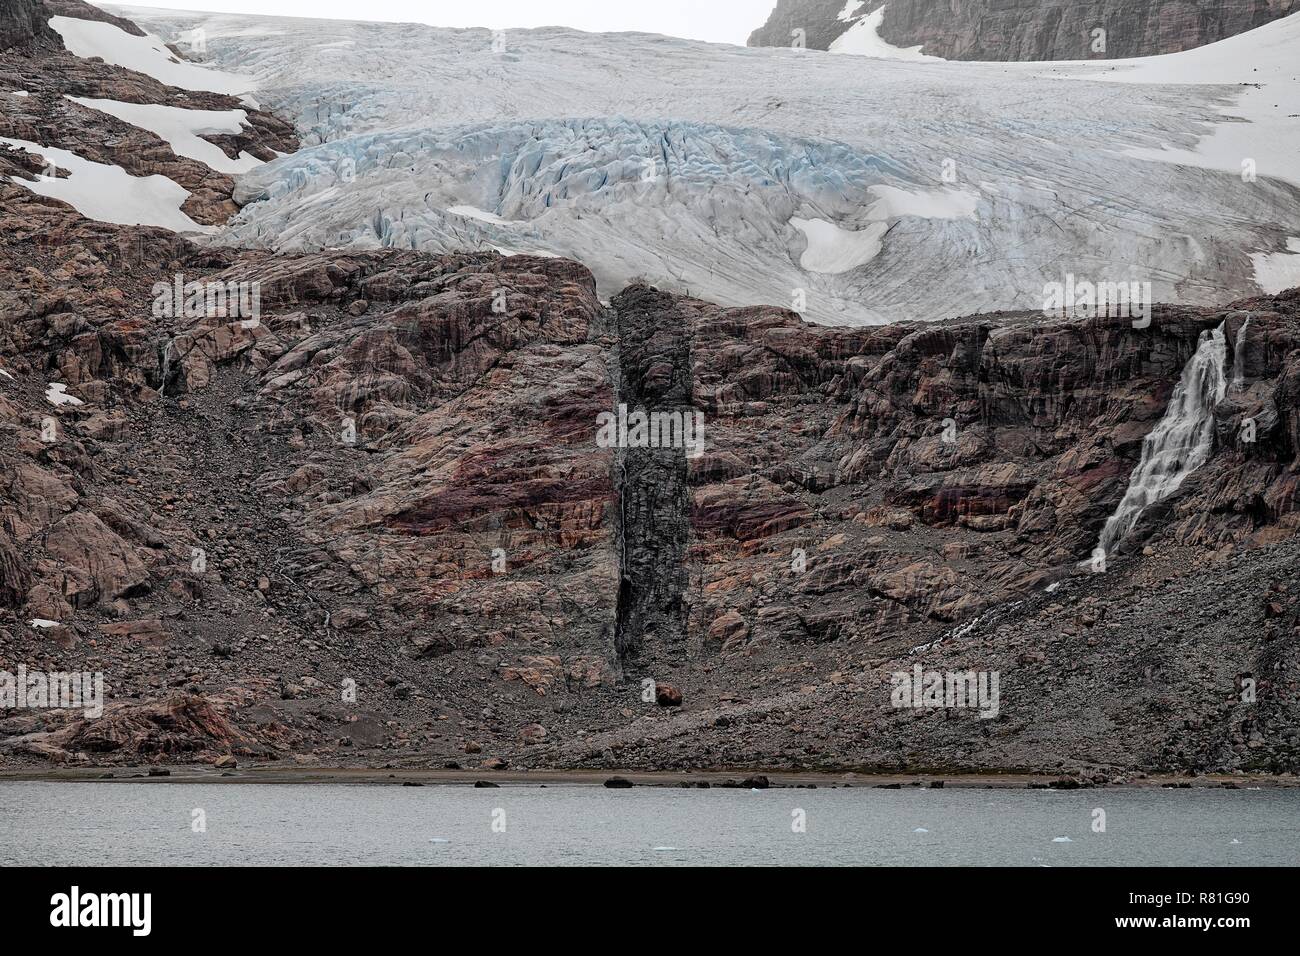 Auf einem Felsen sieht man die Abbruchkante eines Gletschers. In der Mitte erkennt man das Tauwasser, Prinz Christian Sund in Grönland Stock Photo